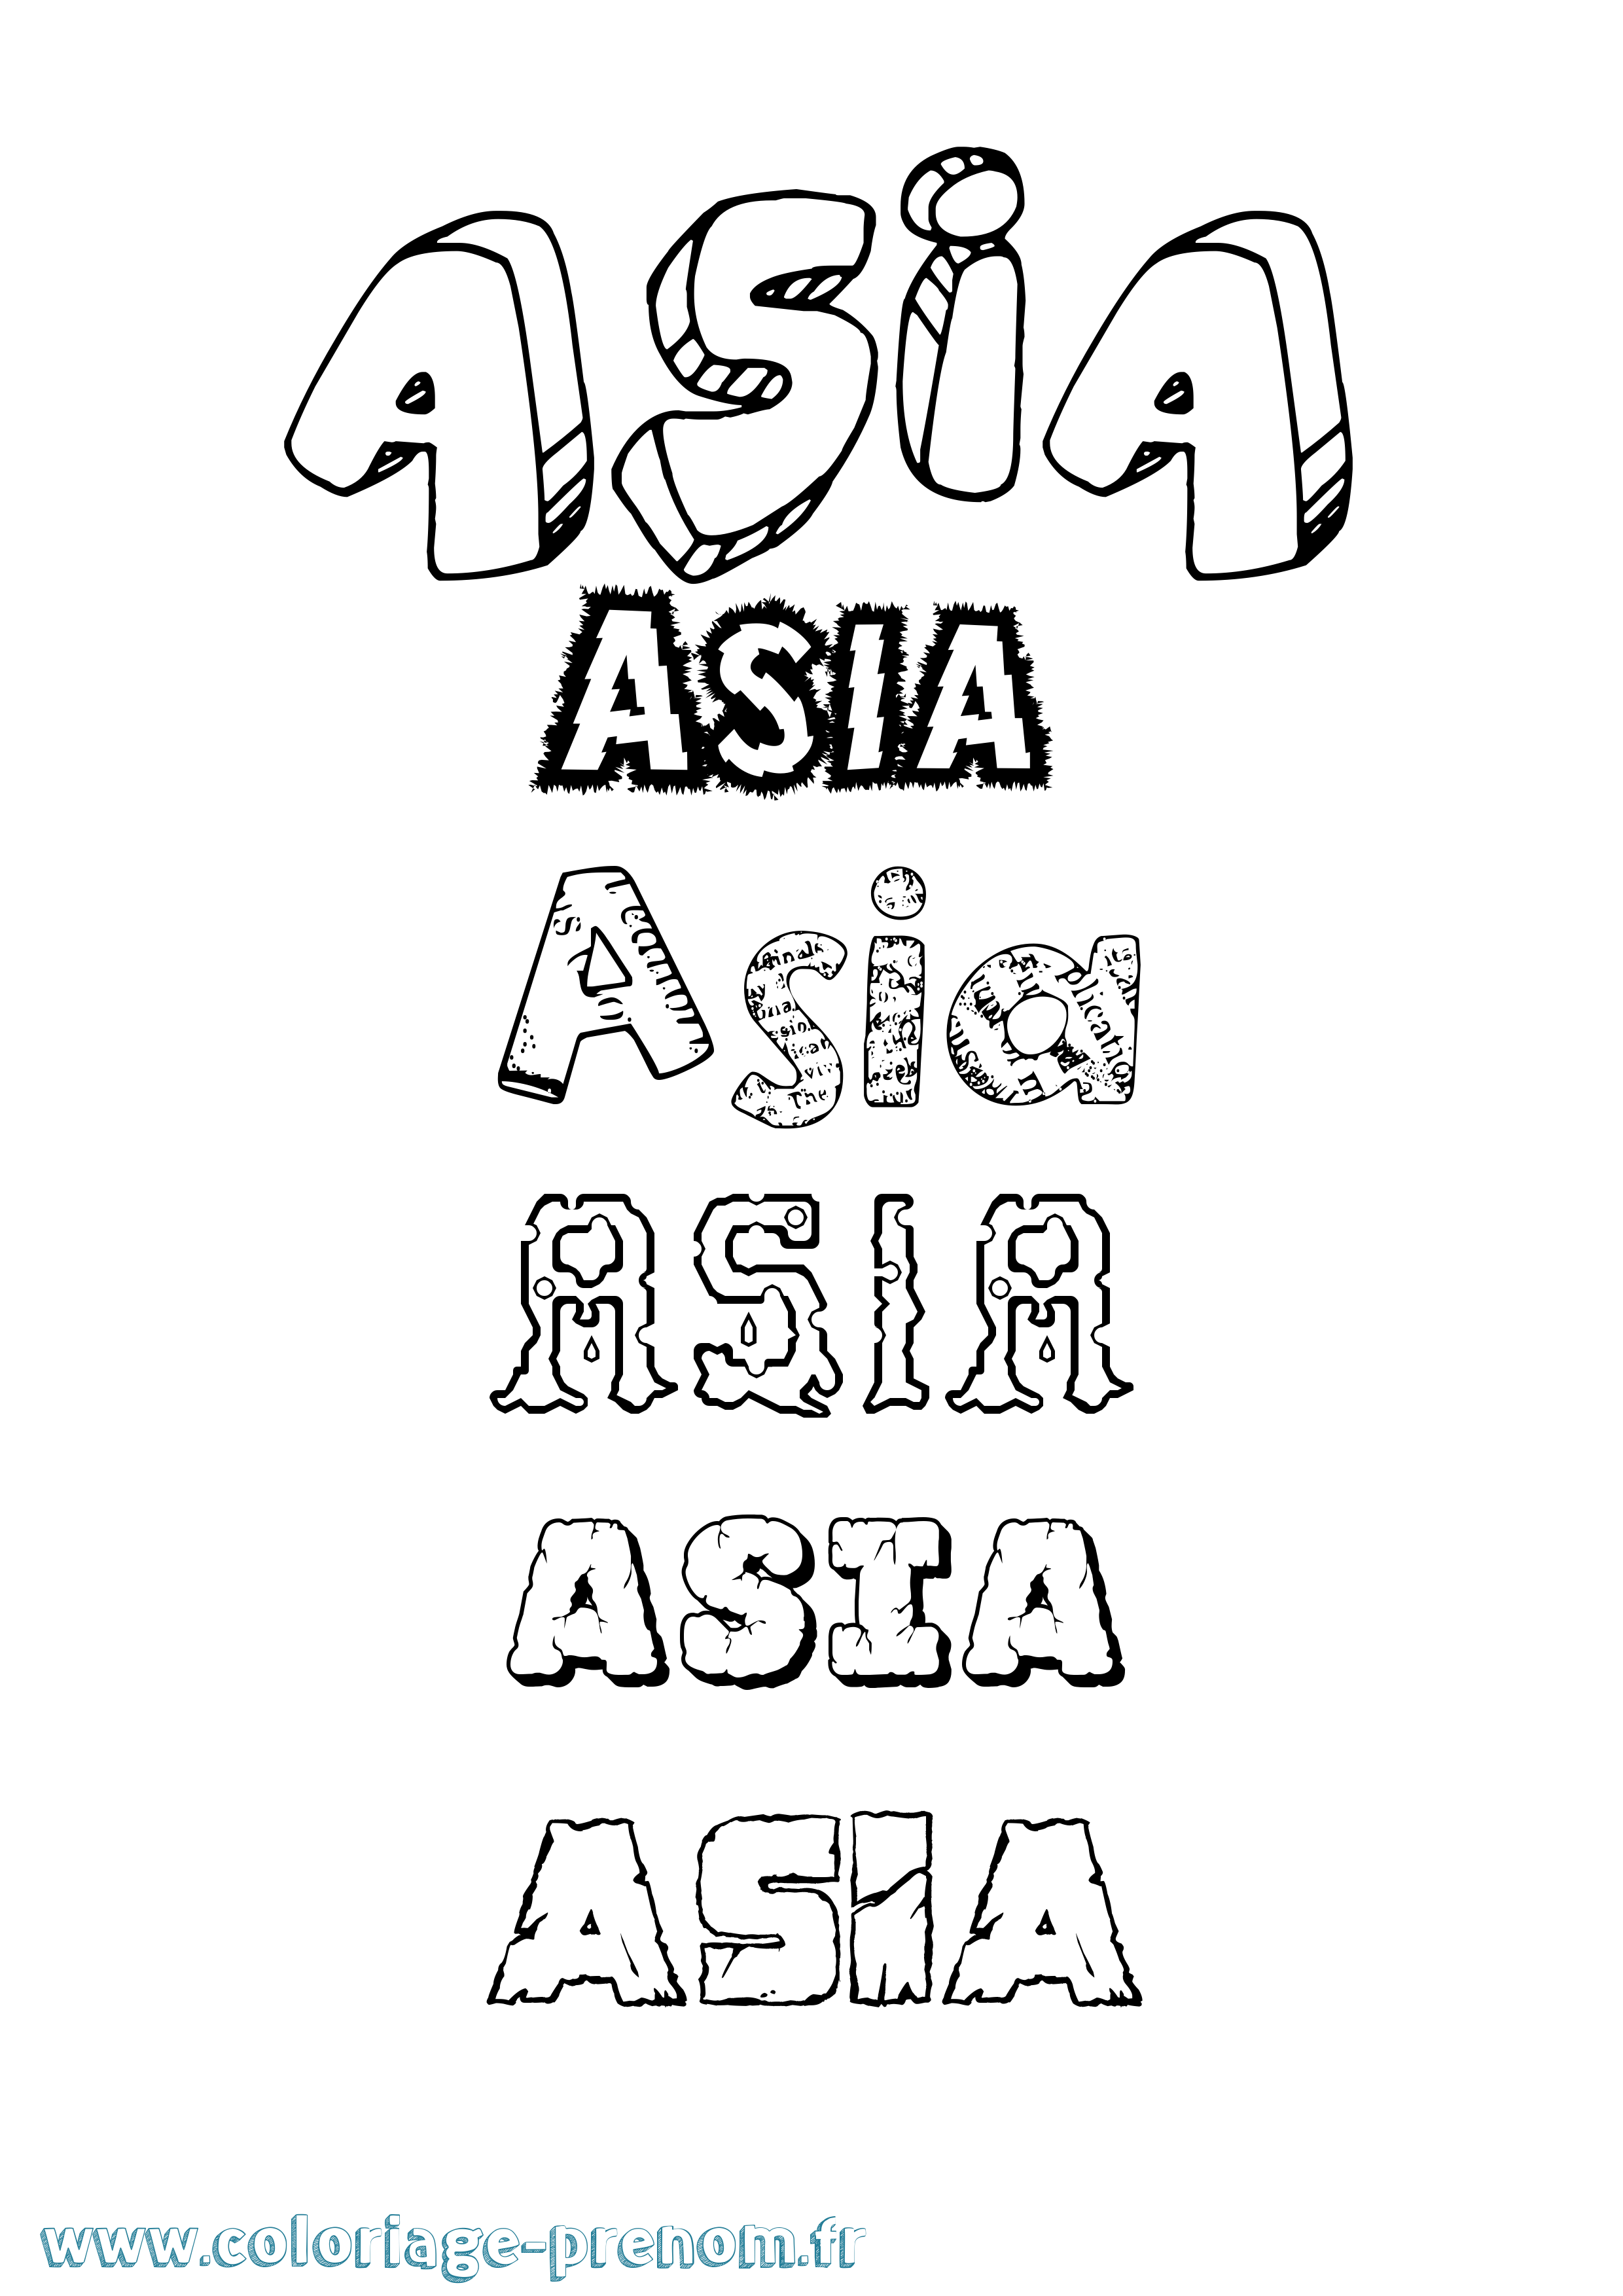 Coloriage prénom Asia